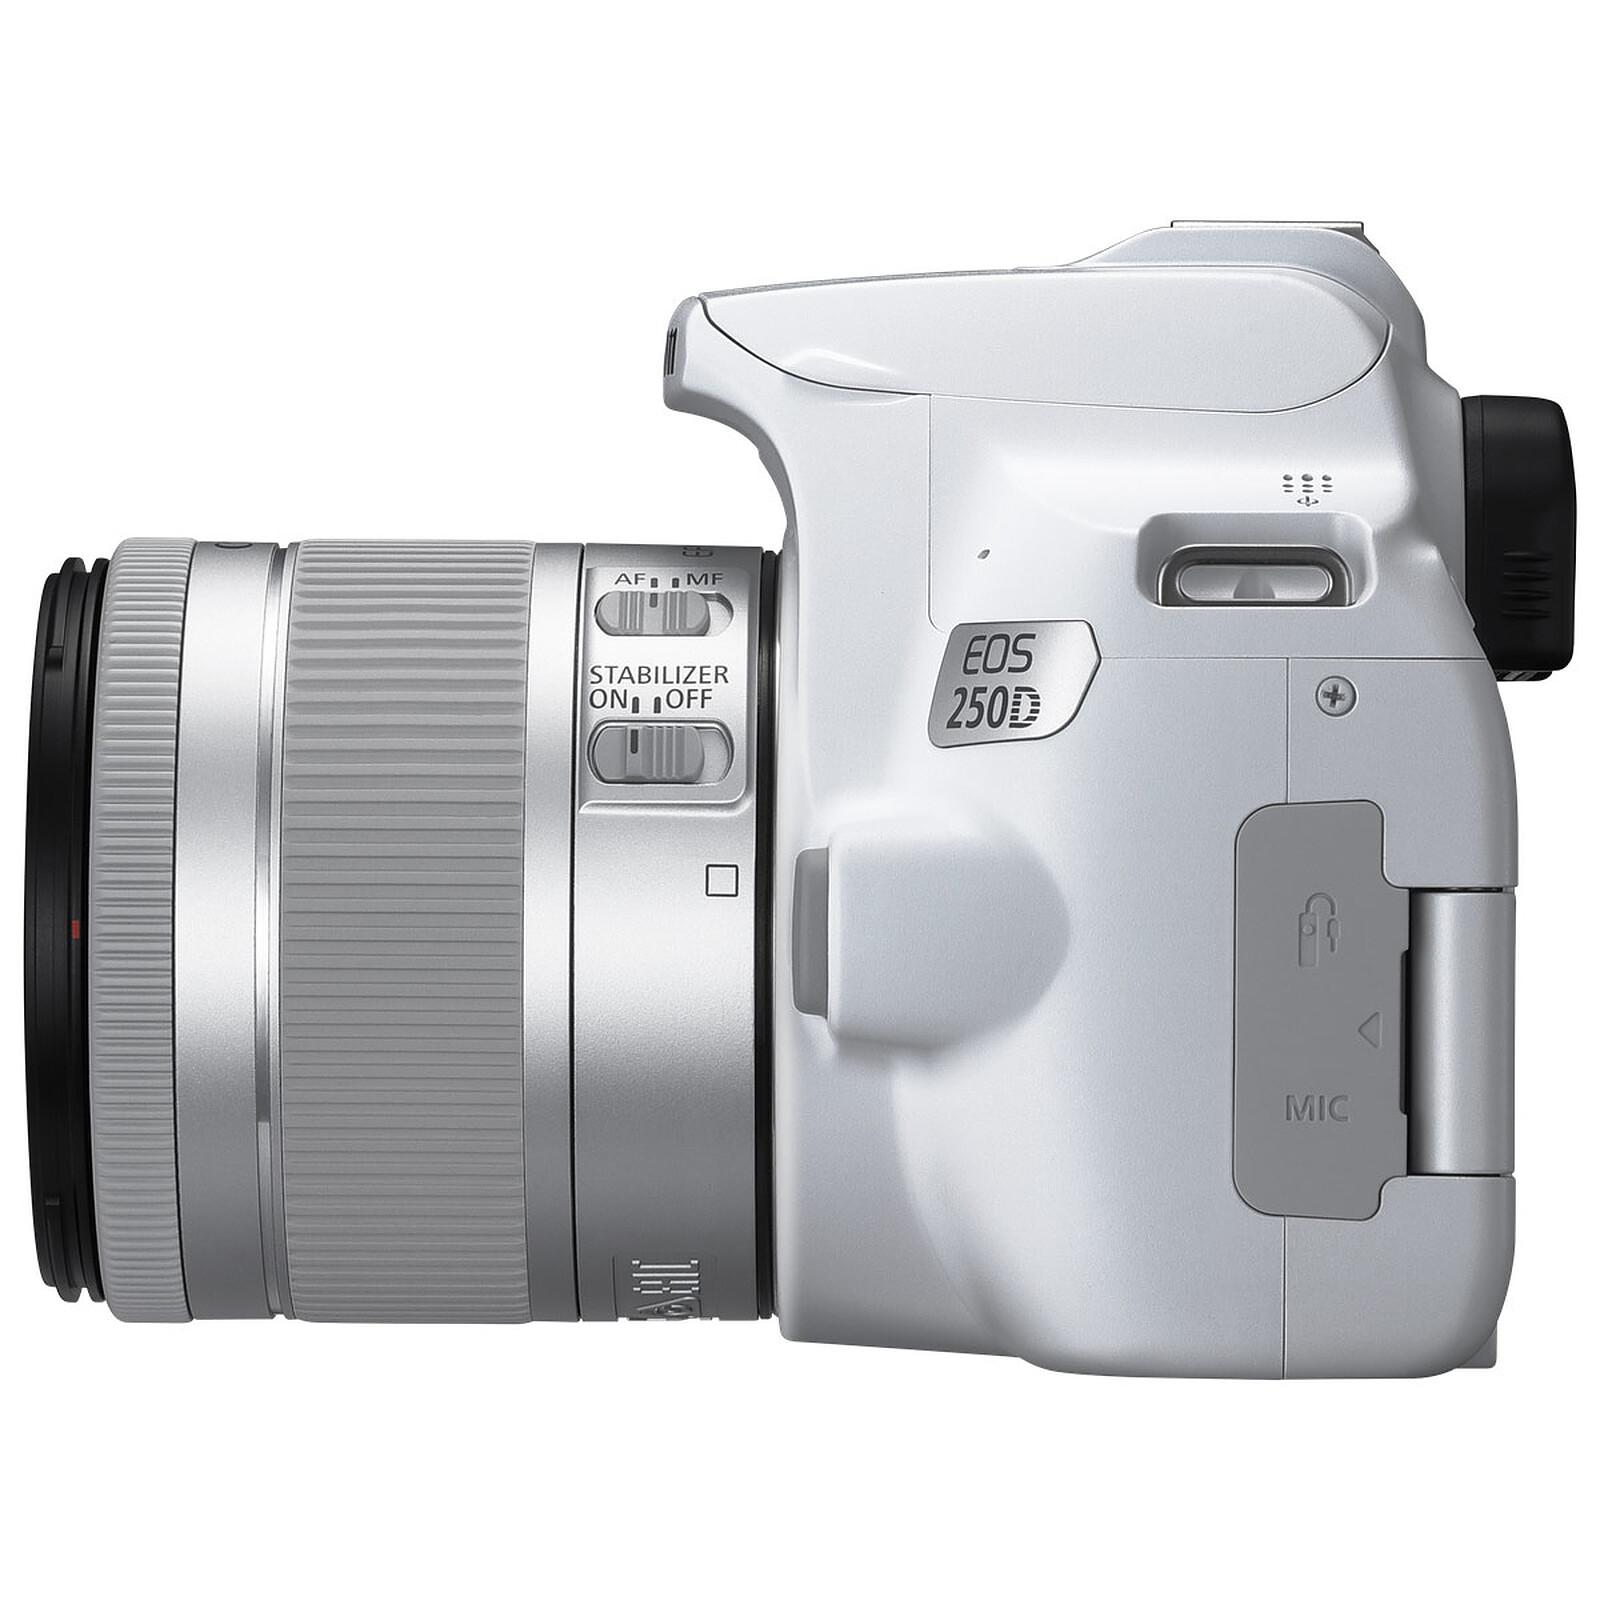 Camara Canon EOS 250D lente 18-55mm Imagen, Sonido Cámaras digitales  Cámaras digitales